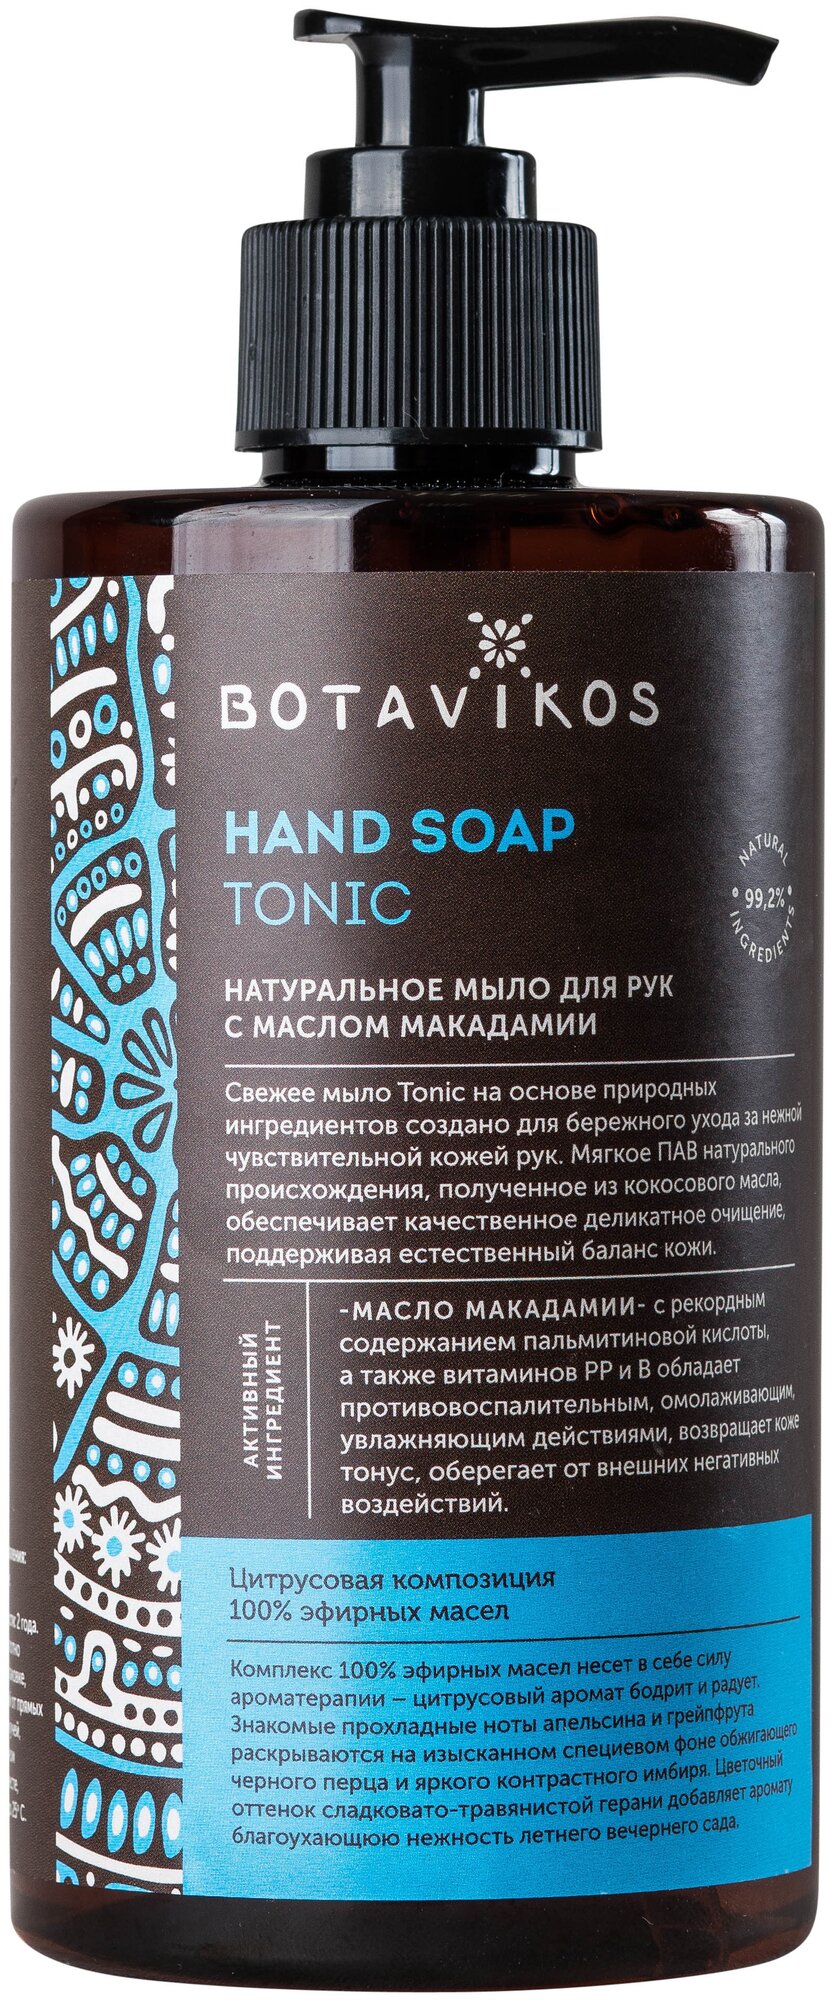 Натуральное жидкое мылдля рук с эфирными маслами Aromatherapy Tonic